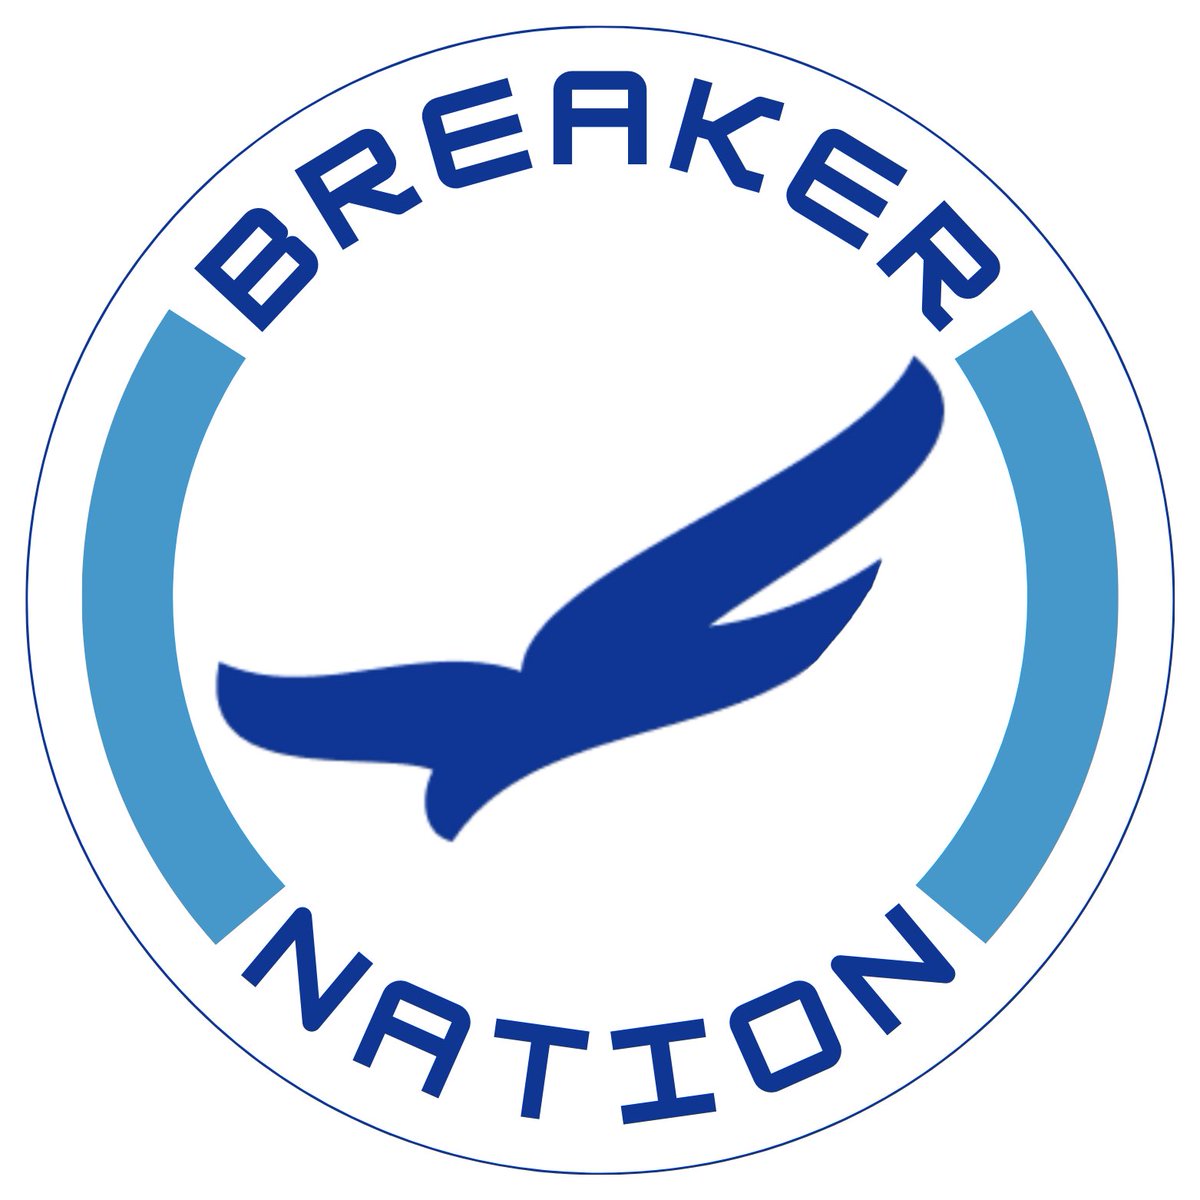 Make sure you’re following my Instagram: breakernation
#USFLNetwork #USFL #NewOrleans #Breakers #GeauxBlueWave #Louisiana #Louisianasports #Sports